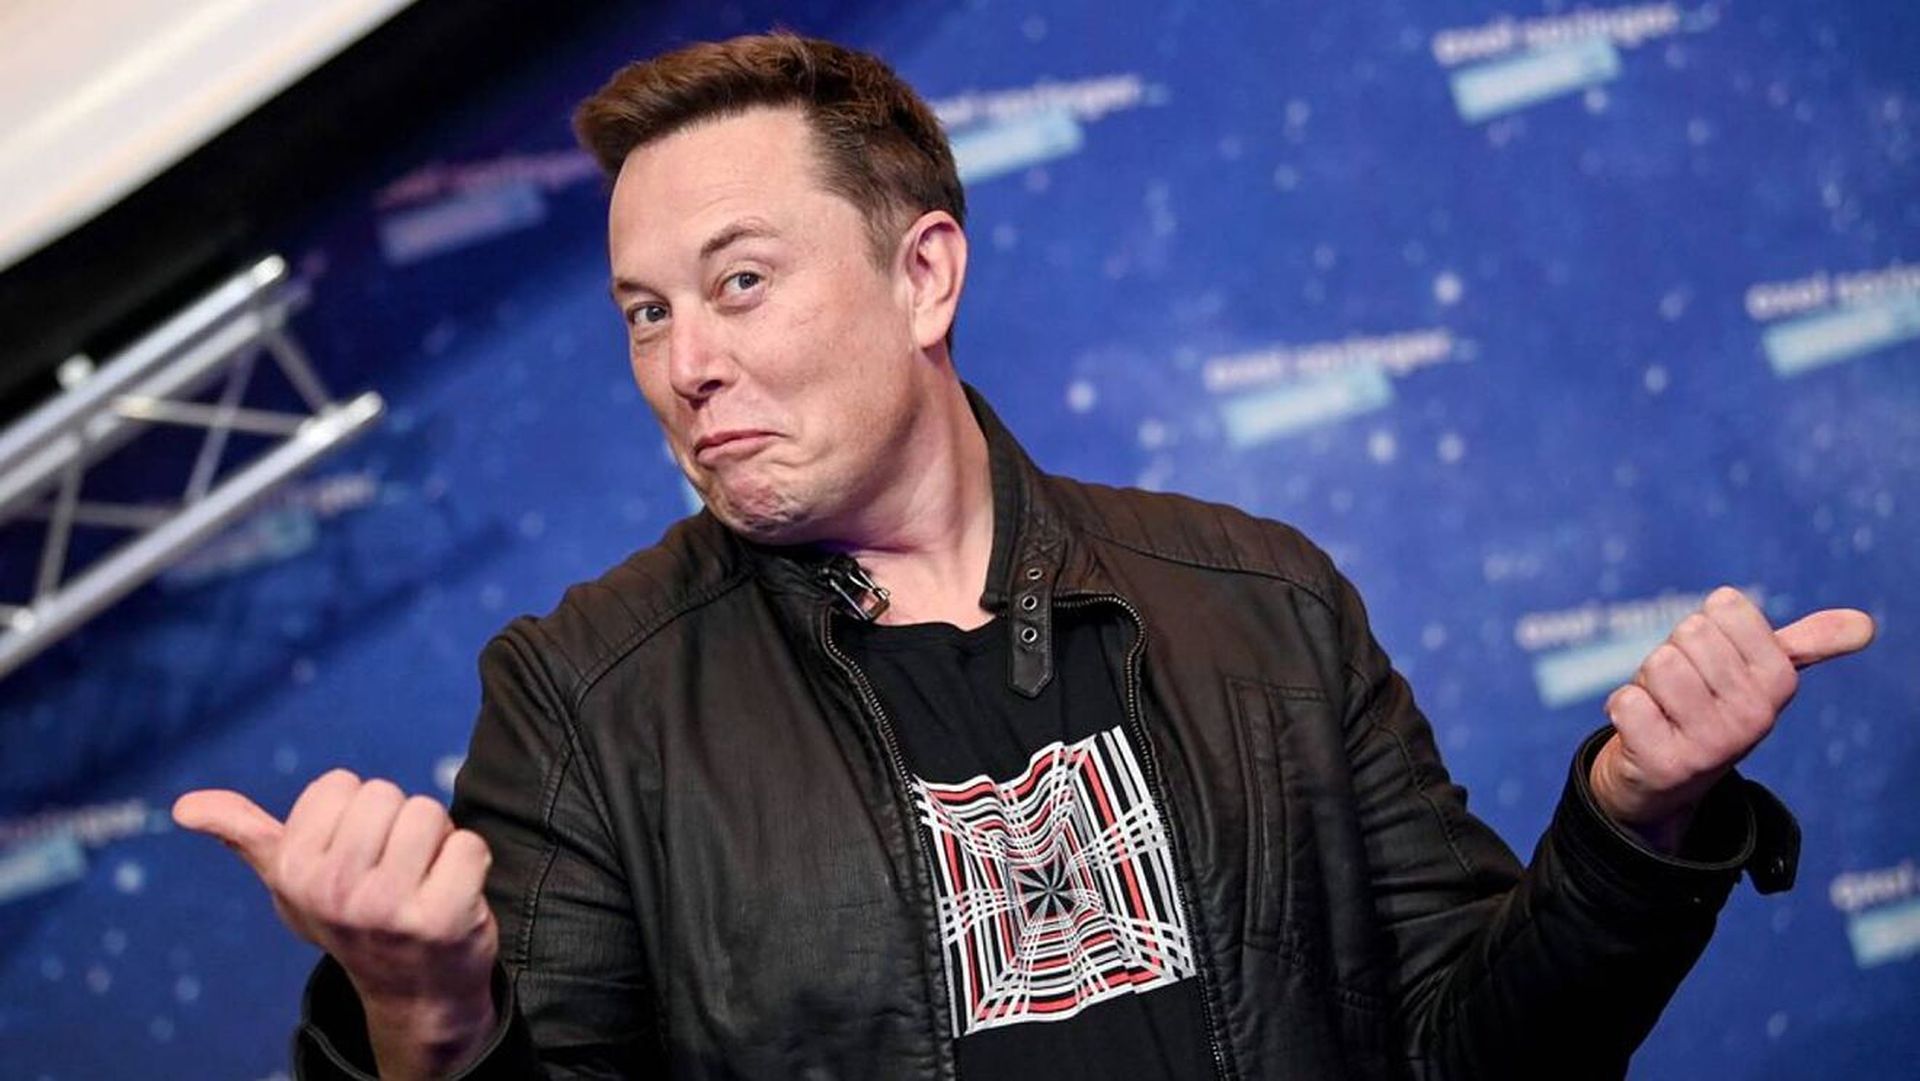 Elon Musk'ın mesajları sızdırıldı: Twitter anlaşması neden bozuldu?